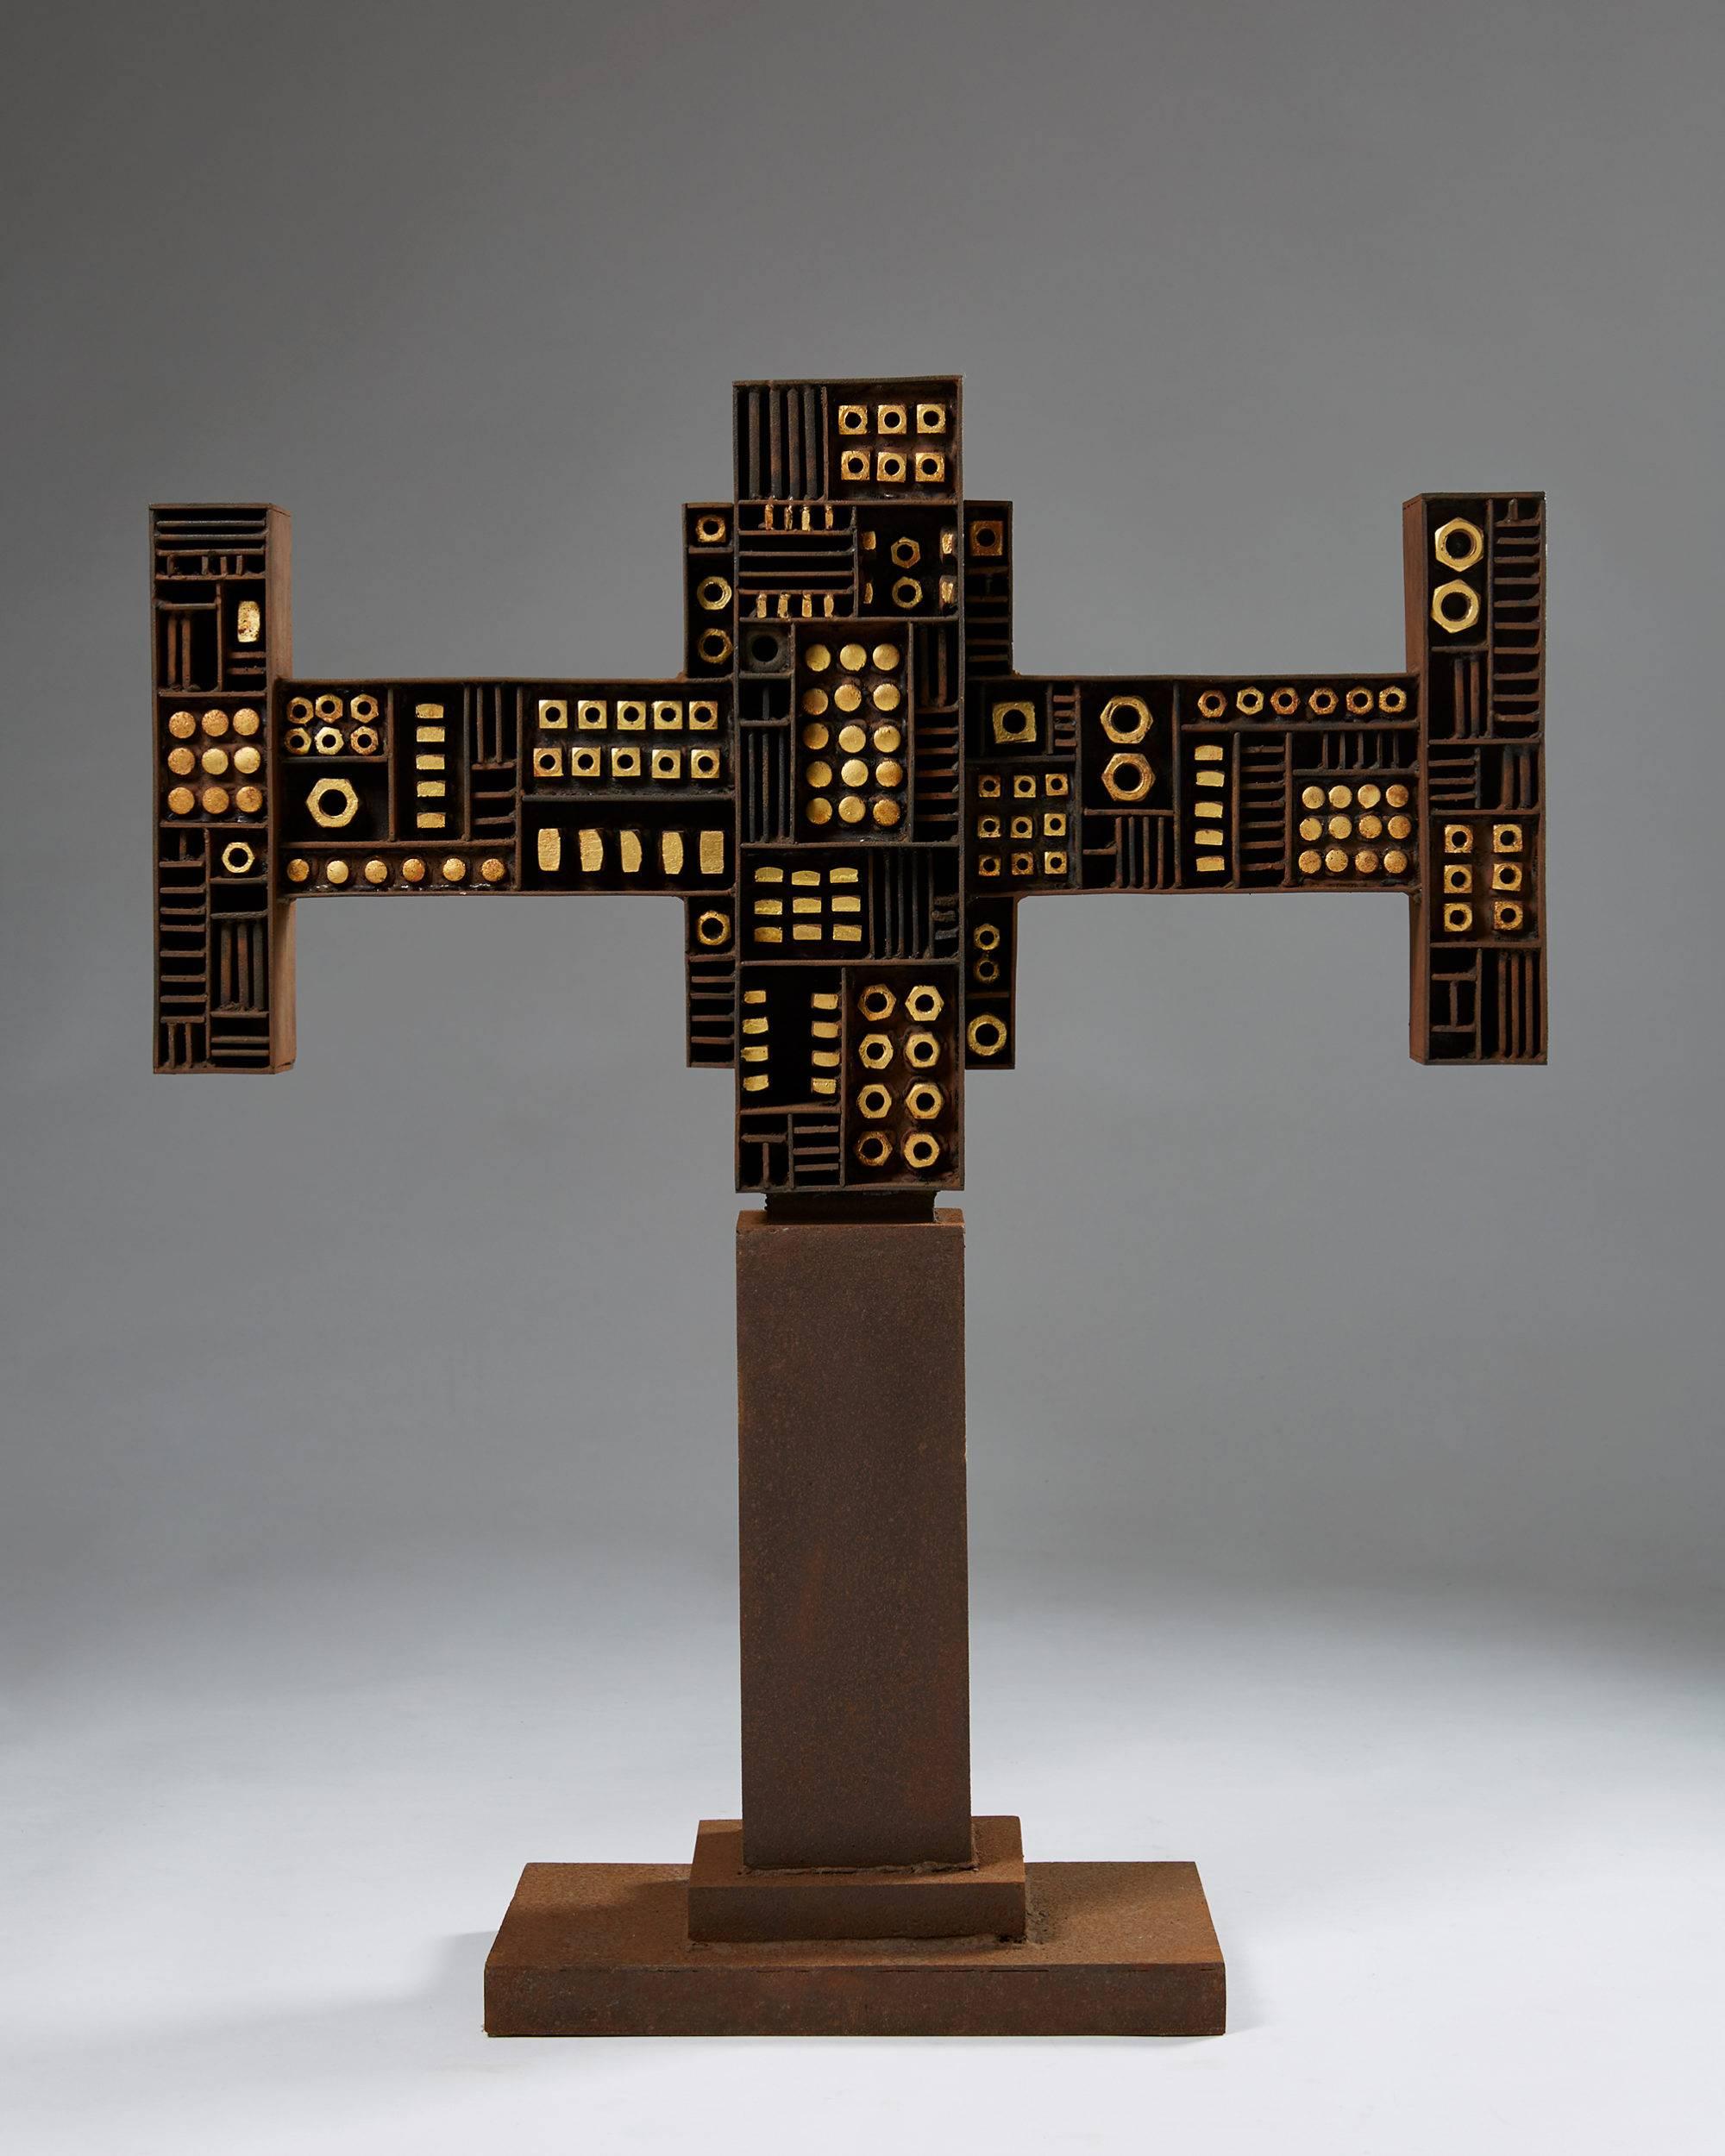 Sculpture designed by Torsten Johansson, Denmark, 1960s.

Iron.

Dimensions:
H: 103 cm
W: 77 cm
D: 30 cm
Base: 30 x 45 cm